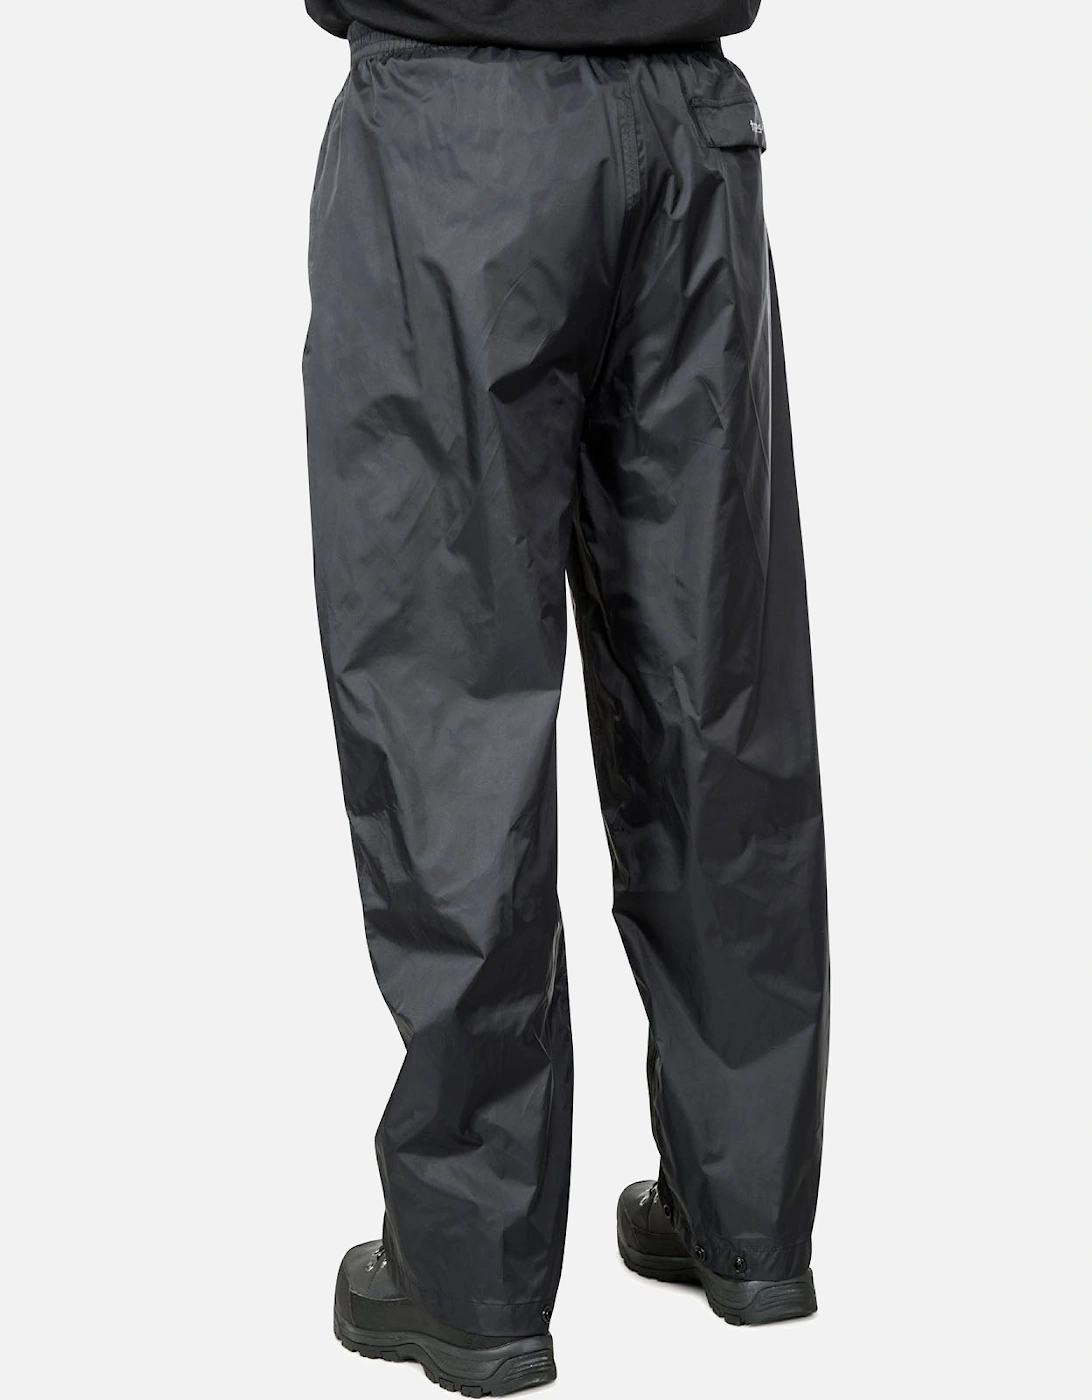 Qikpac Packaway Waterproof Trousers